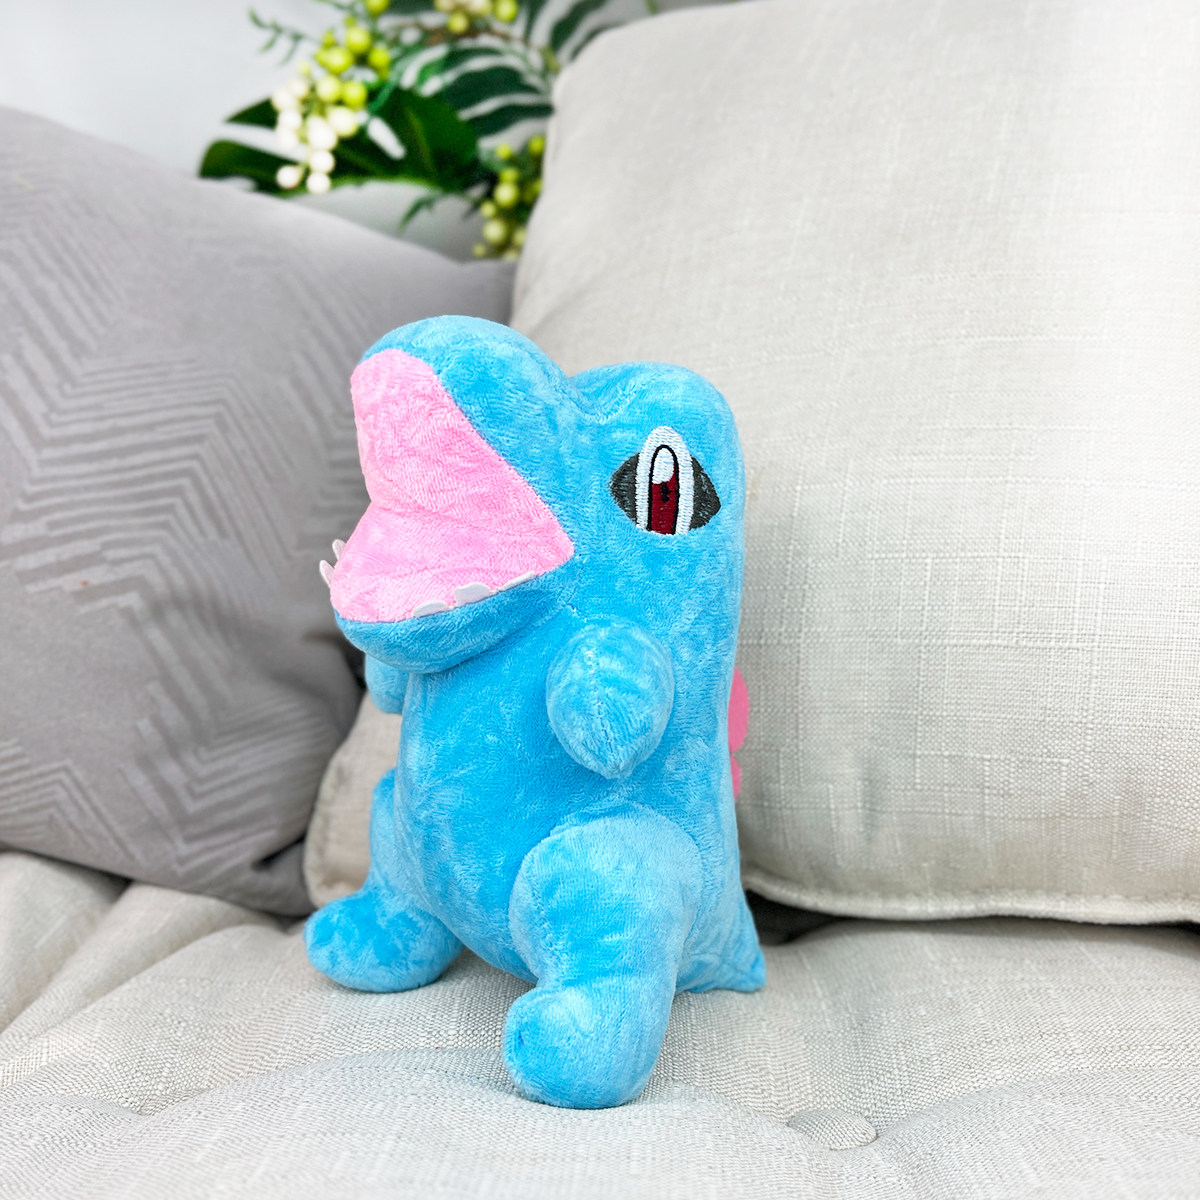 фото игрушки Динозавр голубой, 18 см